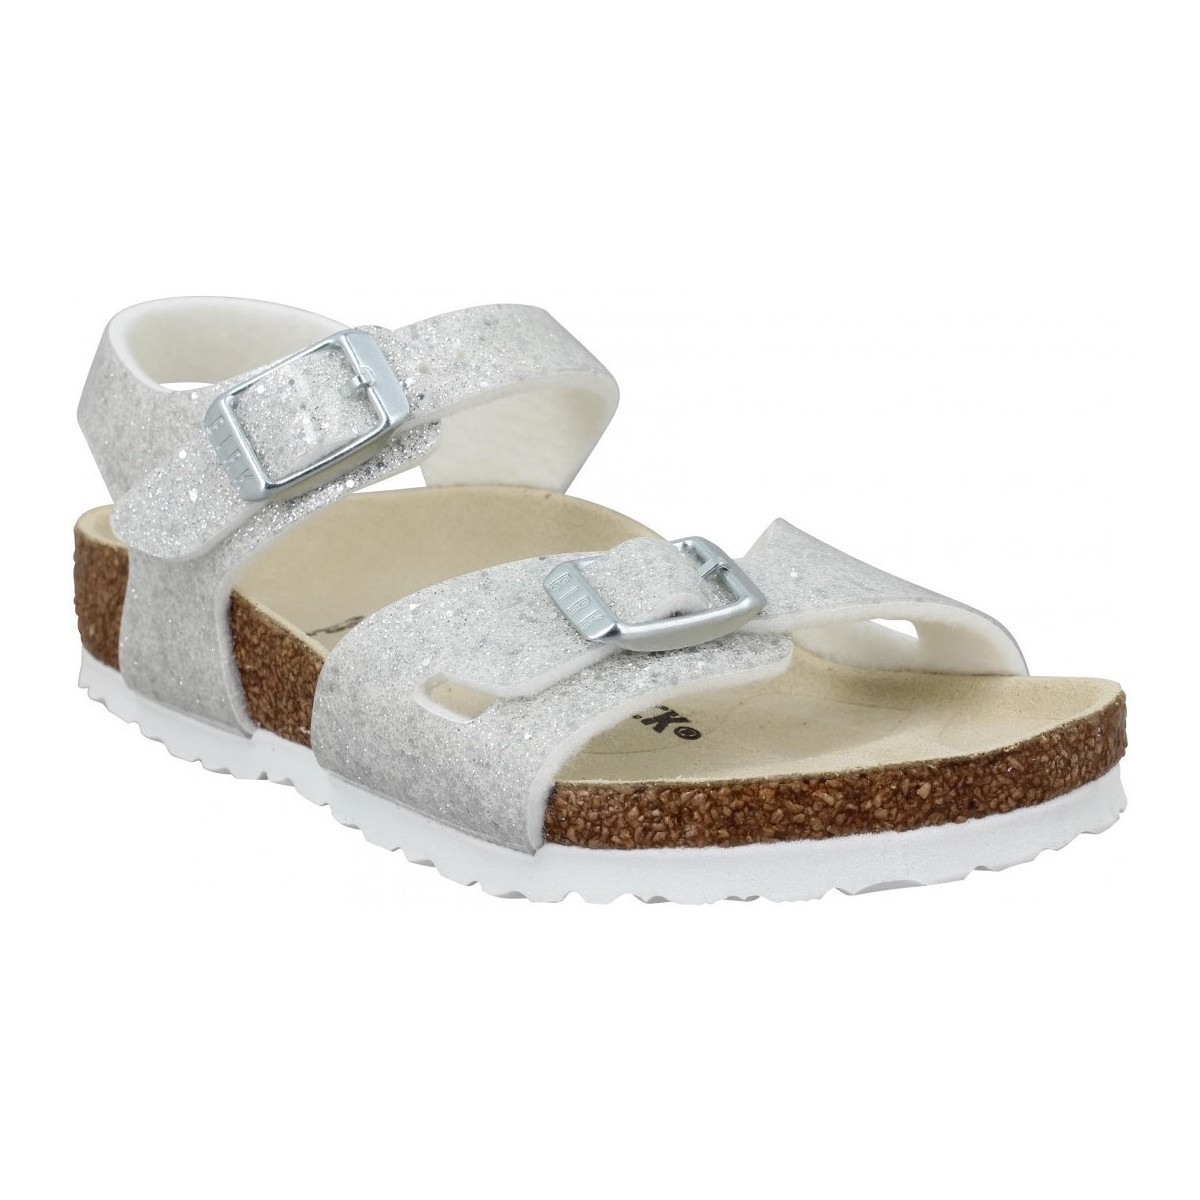 kengät Lapset Sandaalit ja avokkaat Birkenstock Rio Kids Birko Flor Cosmic Sparkle Enfant Blanc Valkoinen